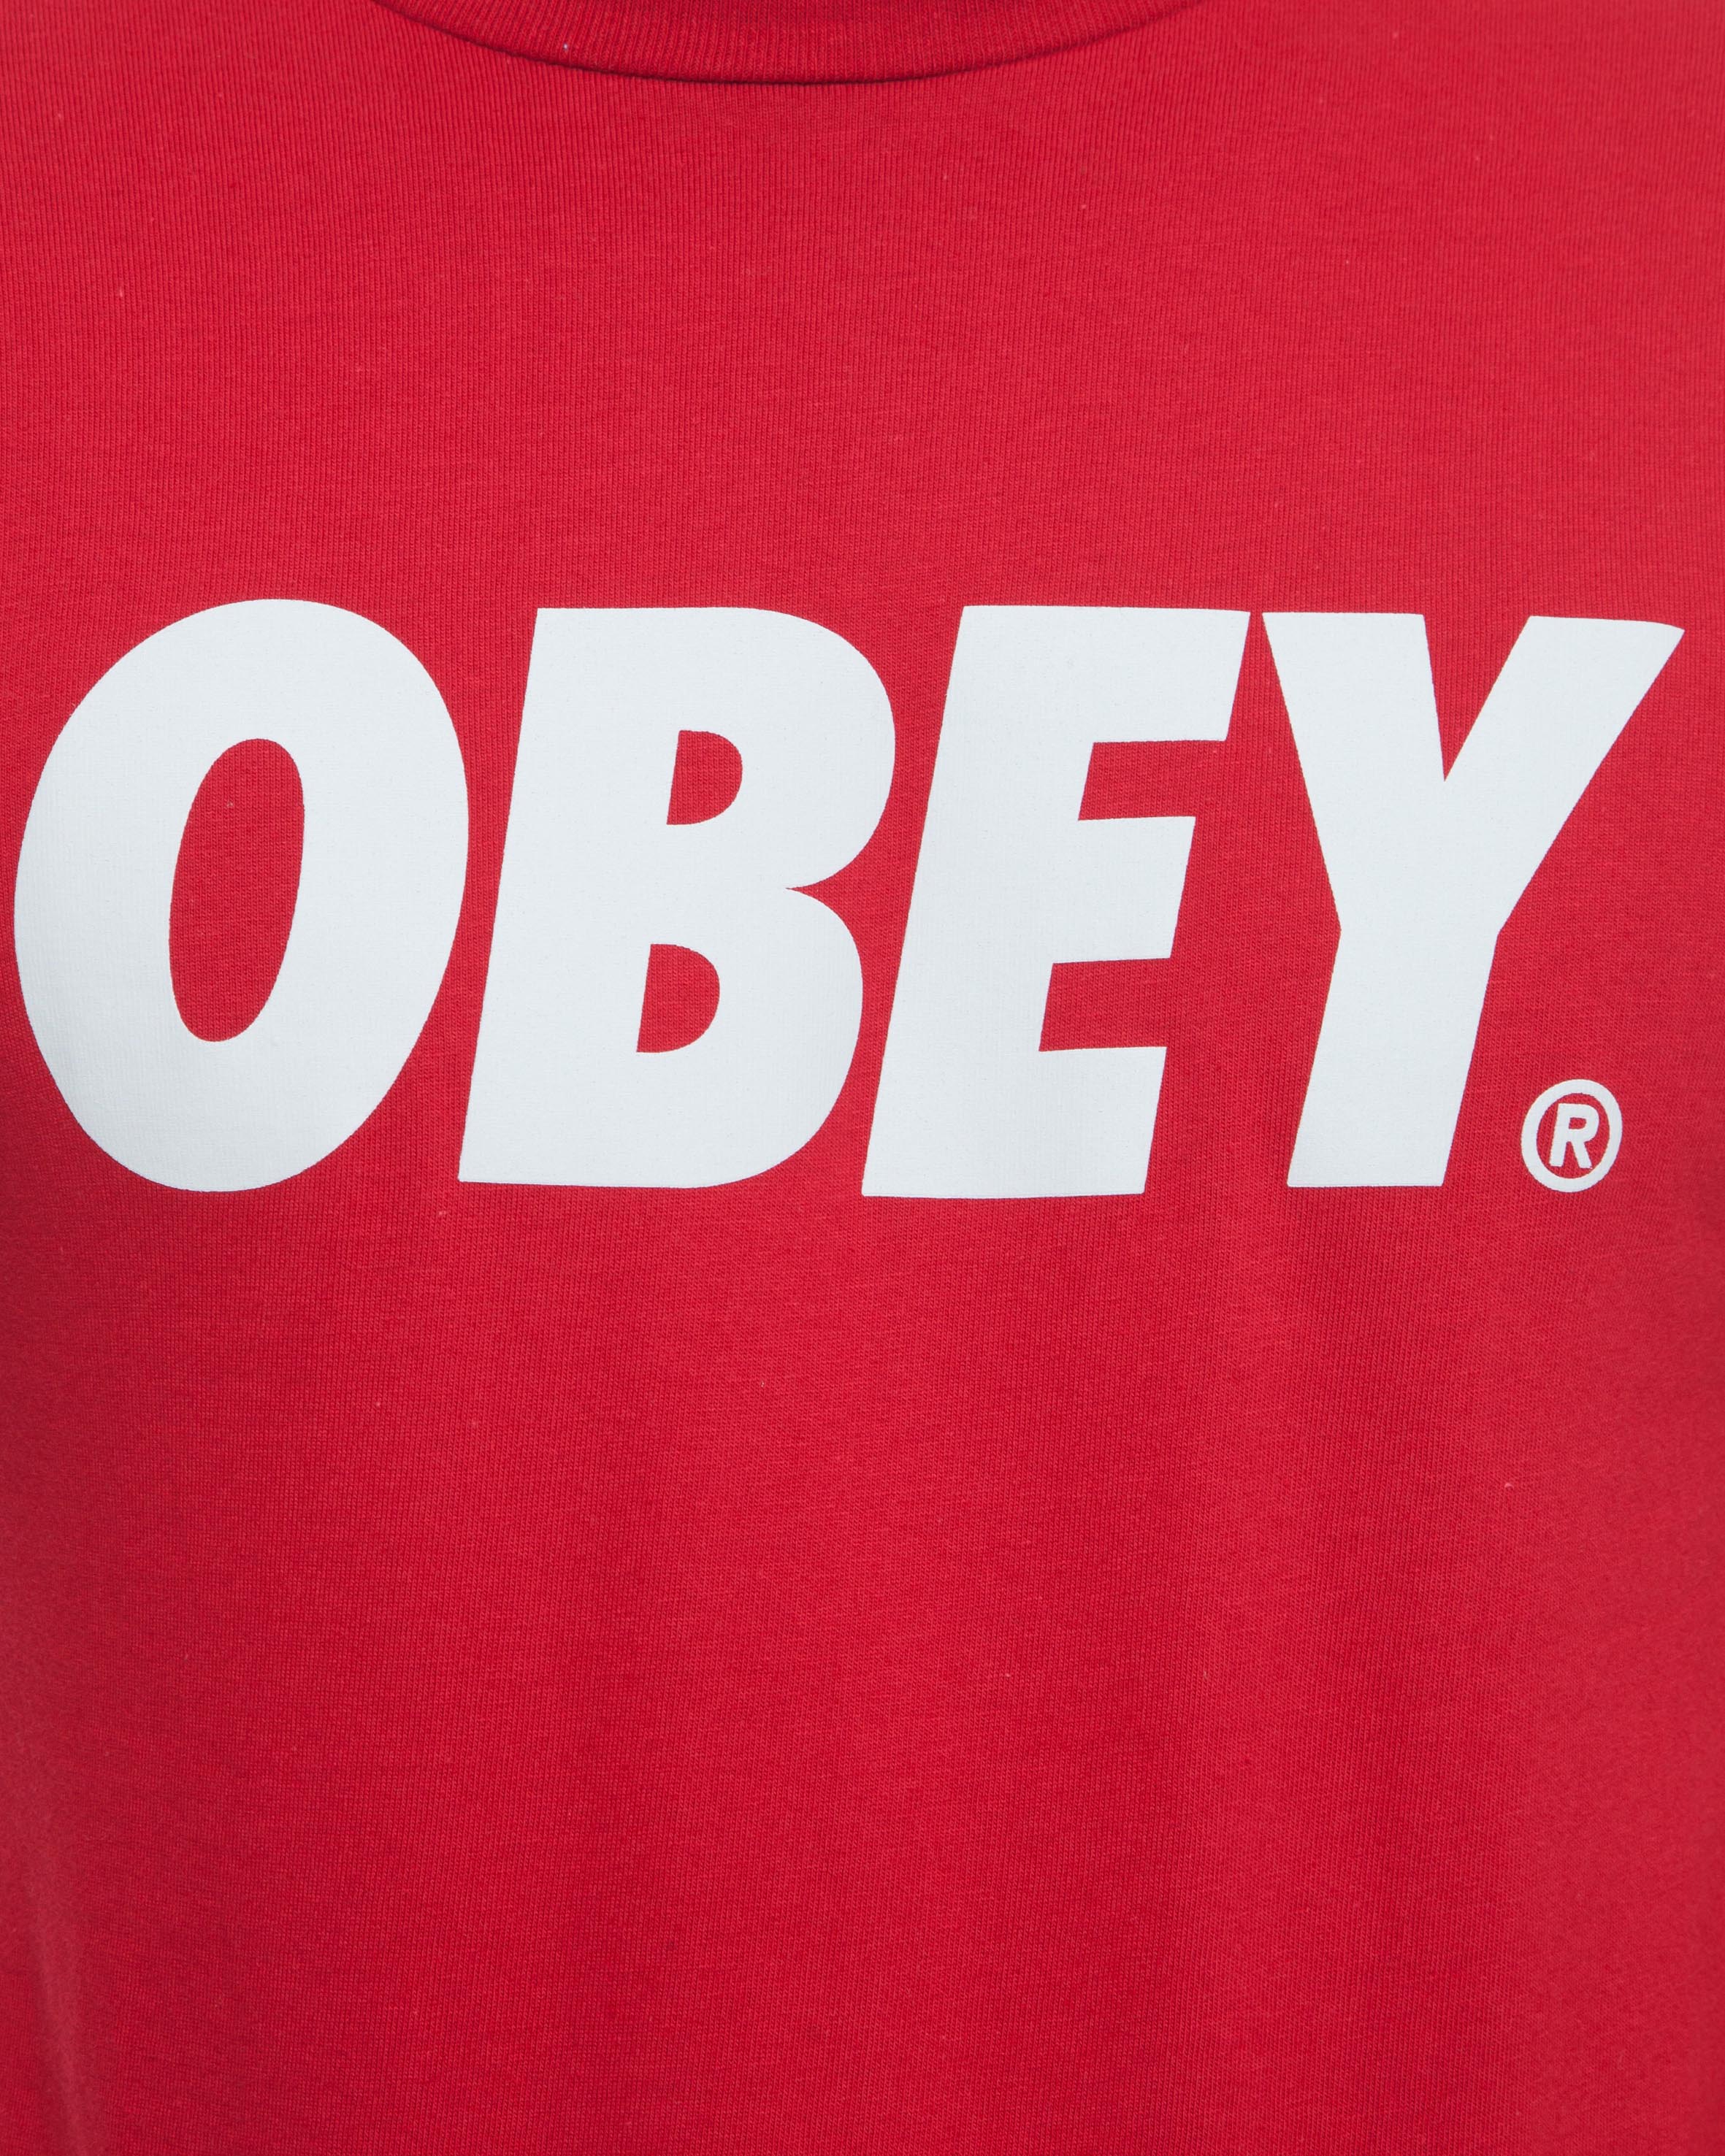 Obey Logos - logo fotos de roblox tumblr